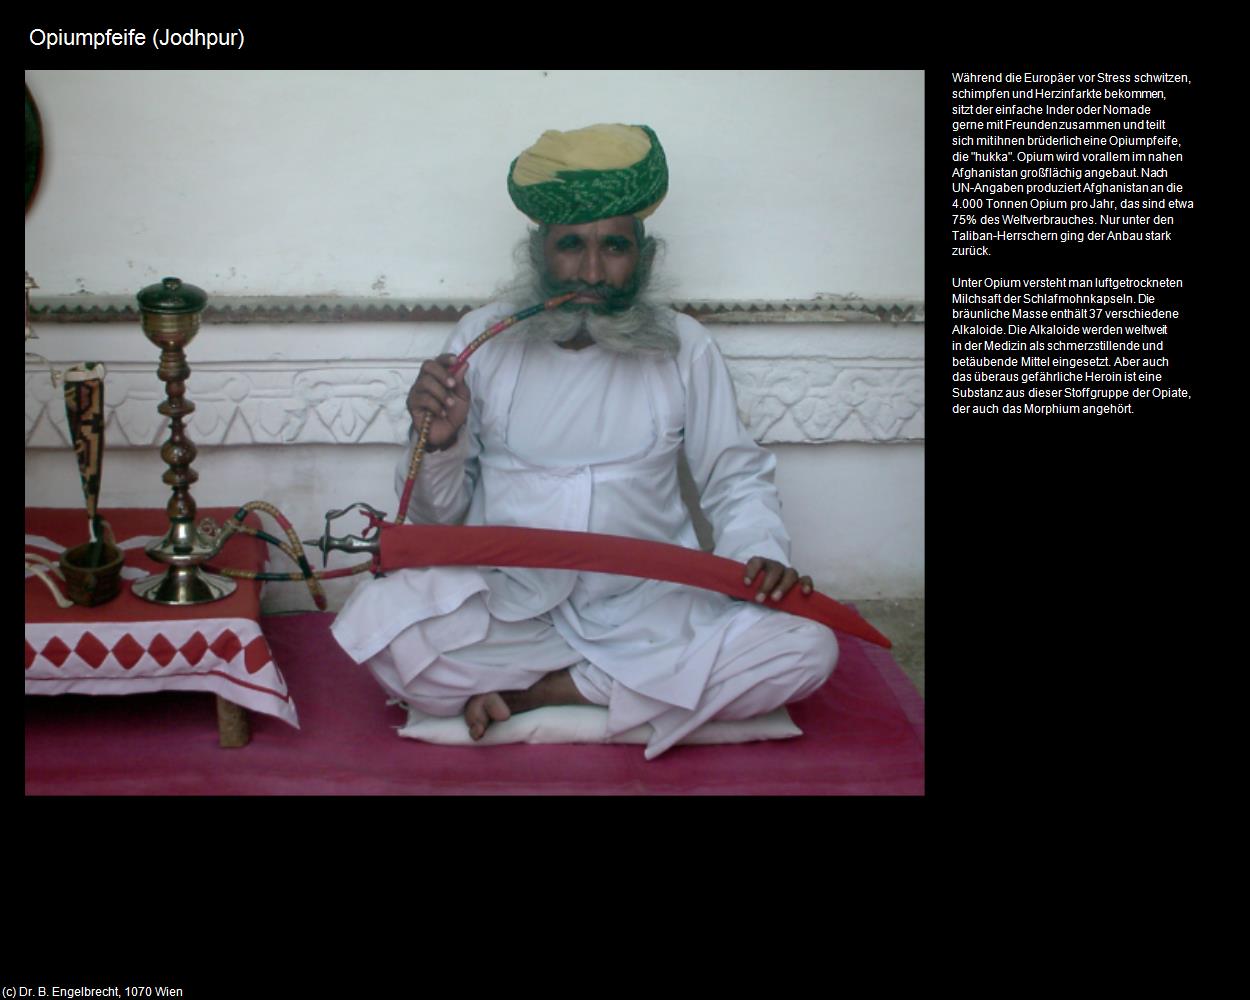 Opiumpfeife (Jodhpur) in Rajasthan - das Land der Könige